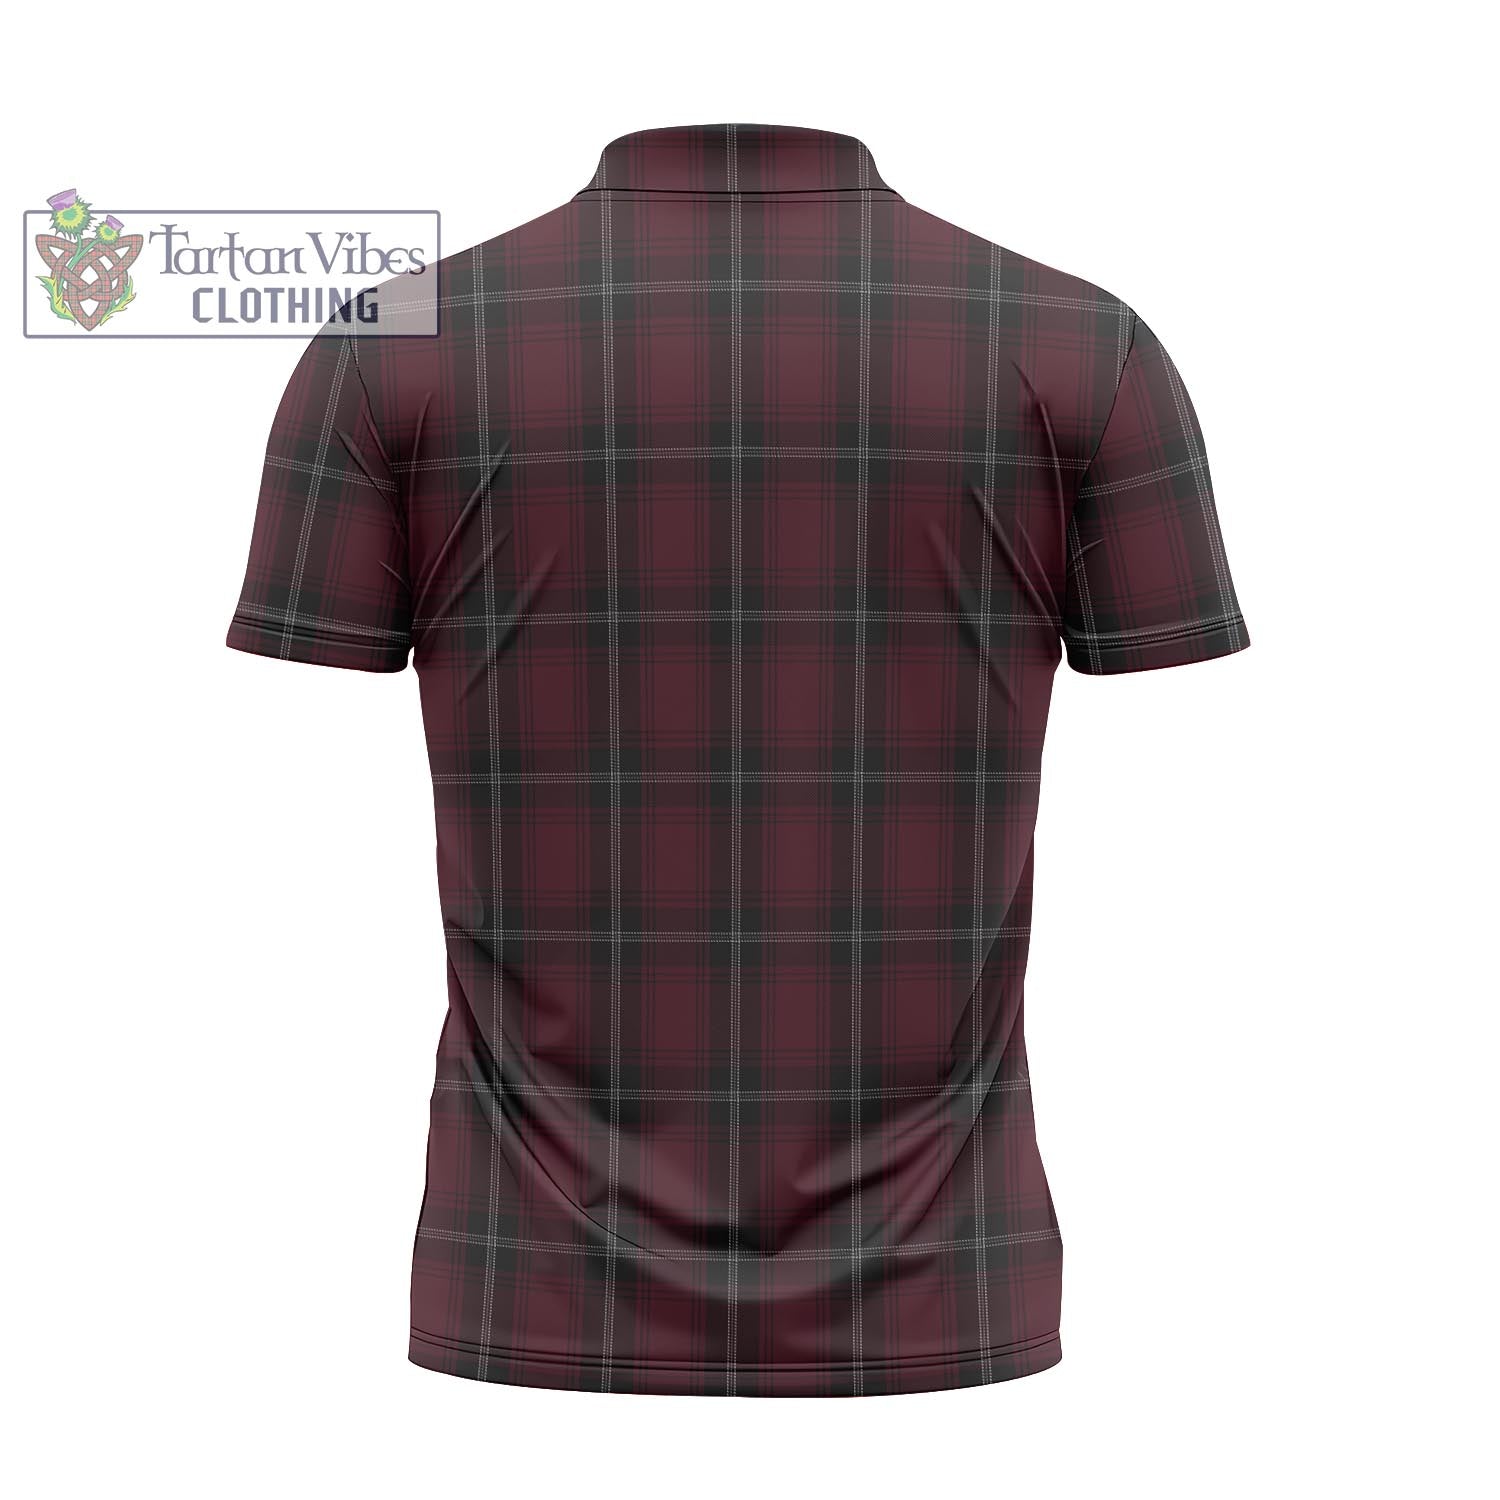 Tartan Vibes Clothing Llewellen of Wales Tartan Zipper Polo Shirt